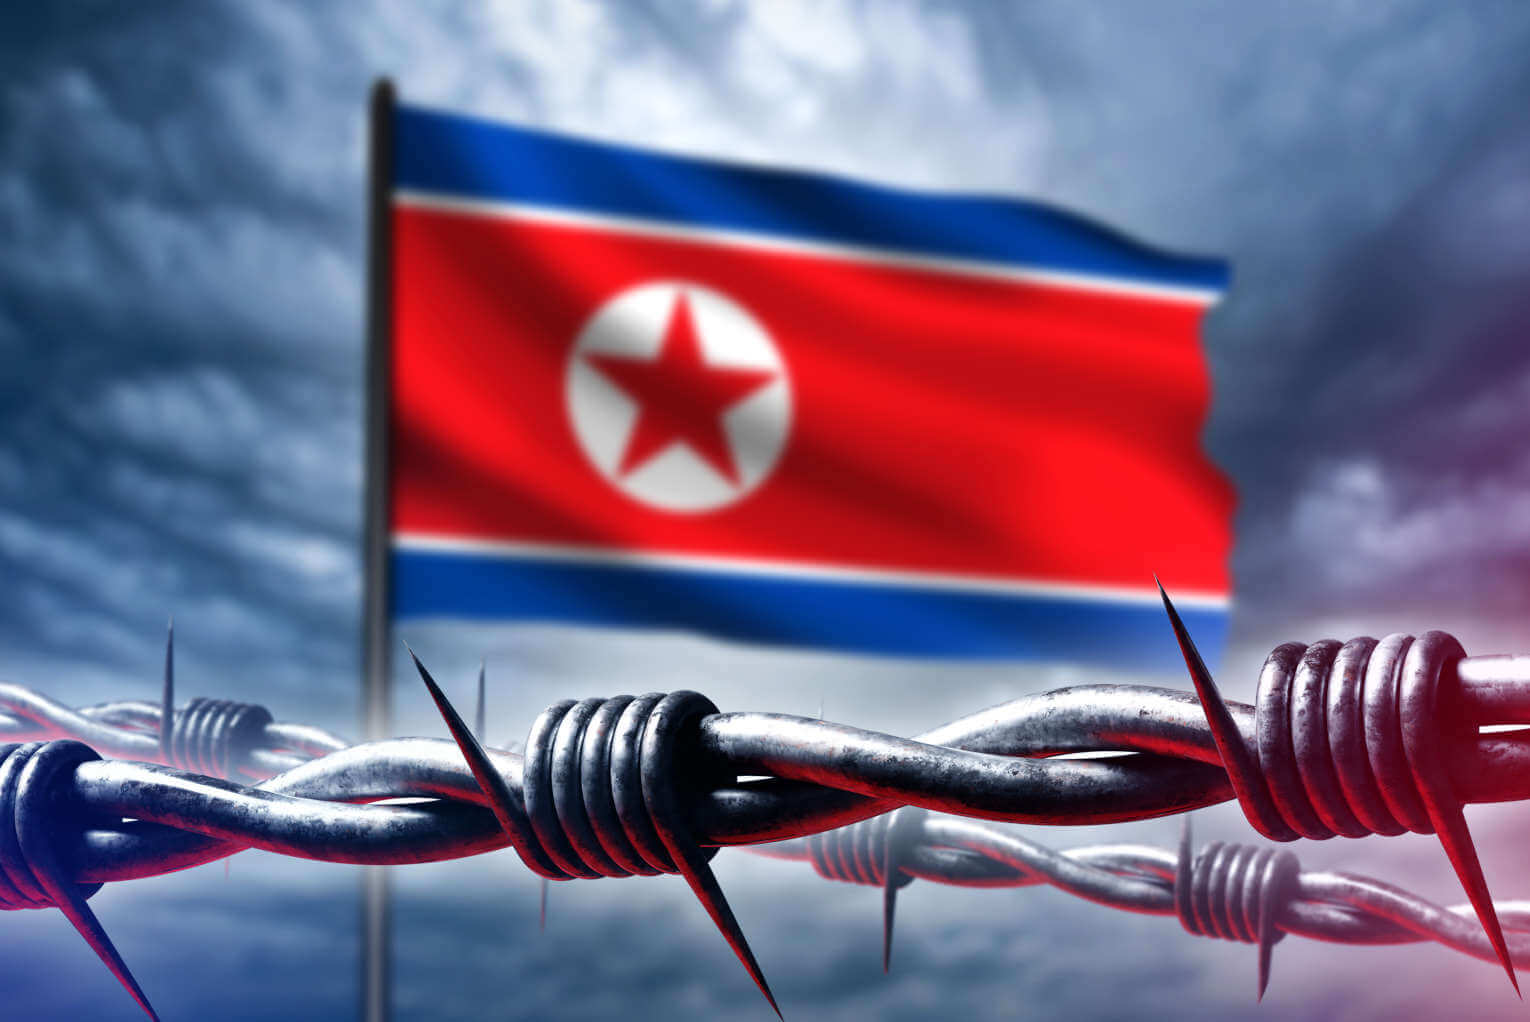 North Korea Prepares for War: ‘Frantic Military Development’ Detected